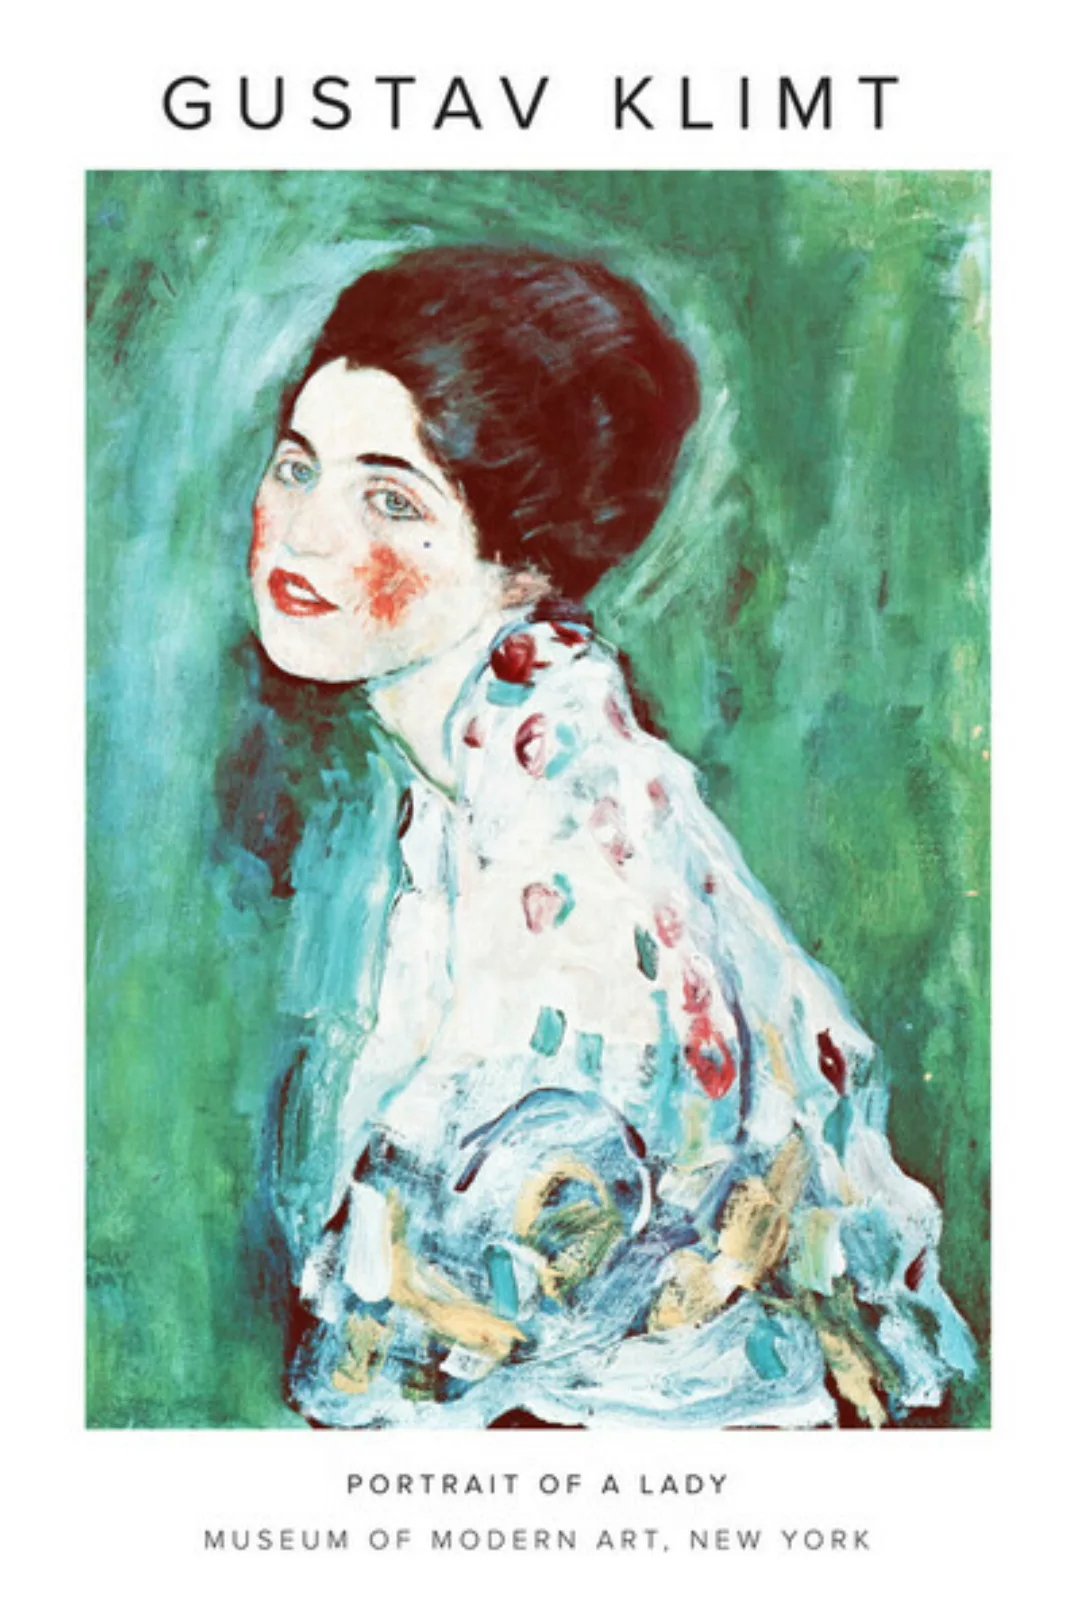 Poster / Leinwandbild - Gustav Klimt - Porträt Einer Dame günstig online kaufen